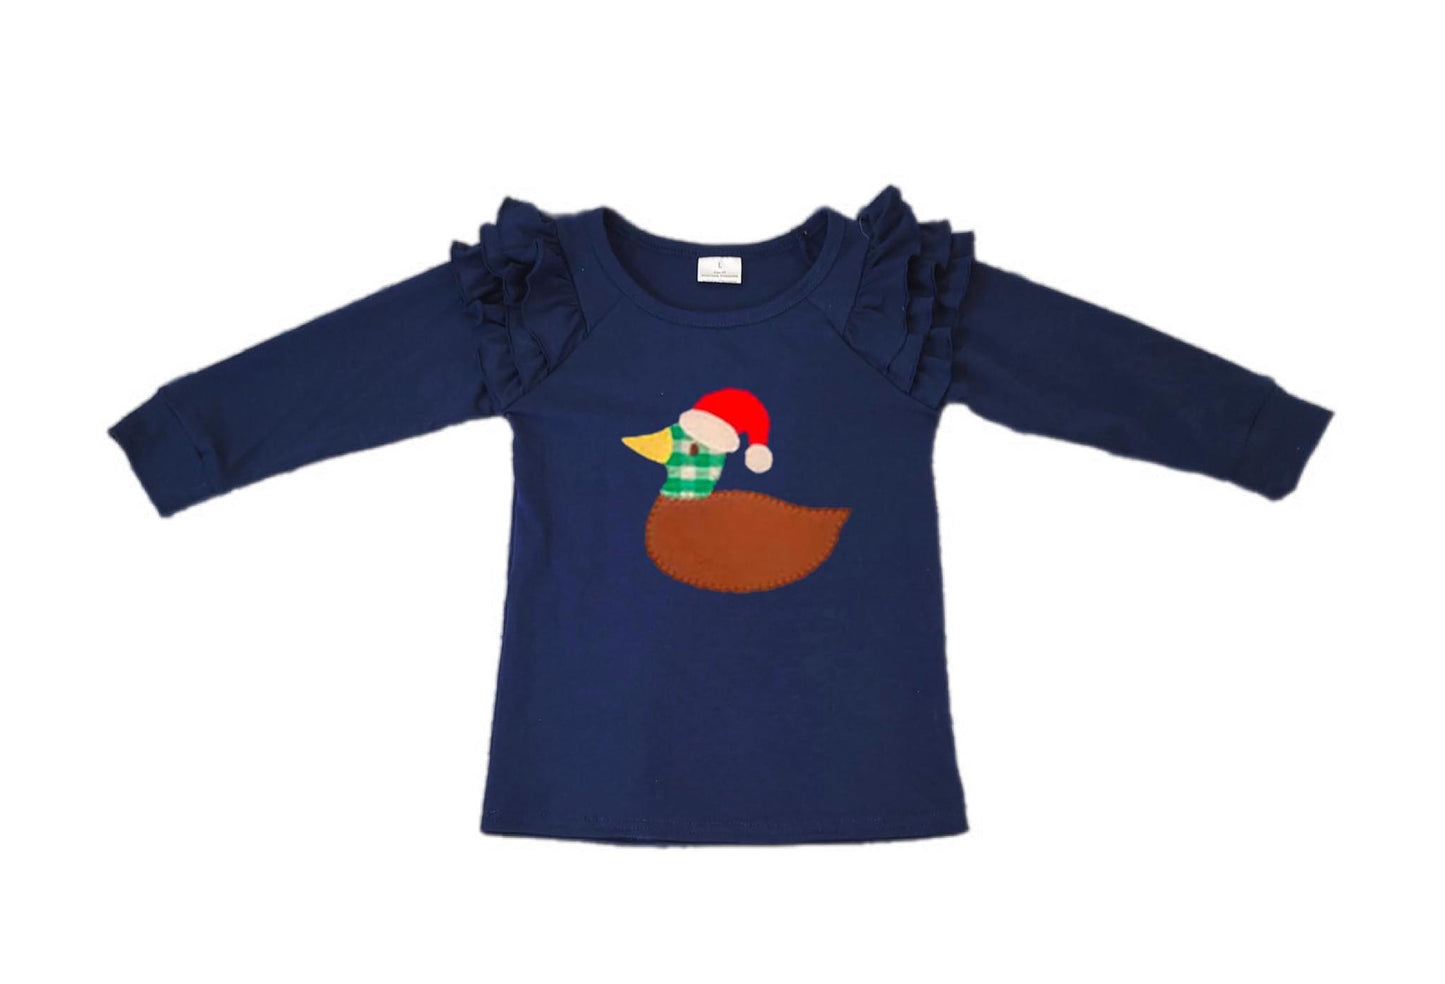 ᴡᴇᴇᴋʟʏ ᴘʀᴇ ᴏʀᴅᴇʀ Christmas Duck Top